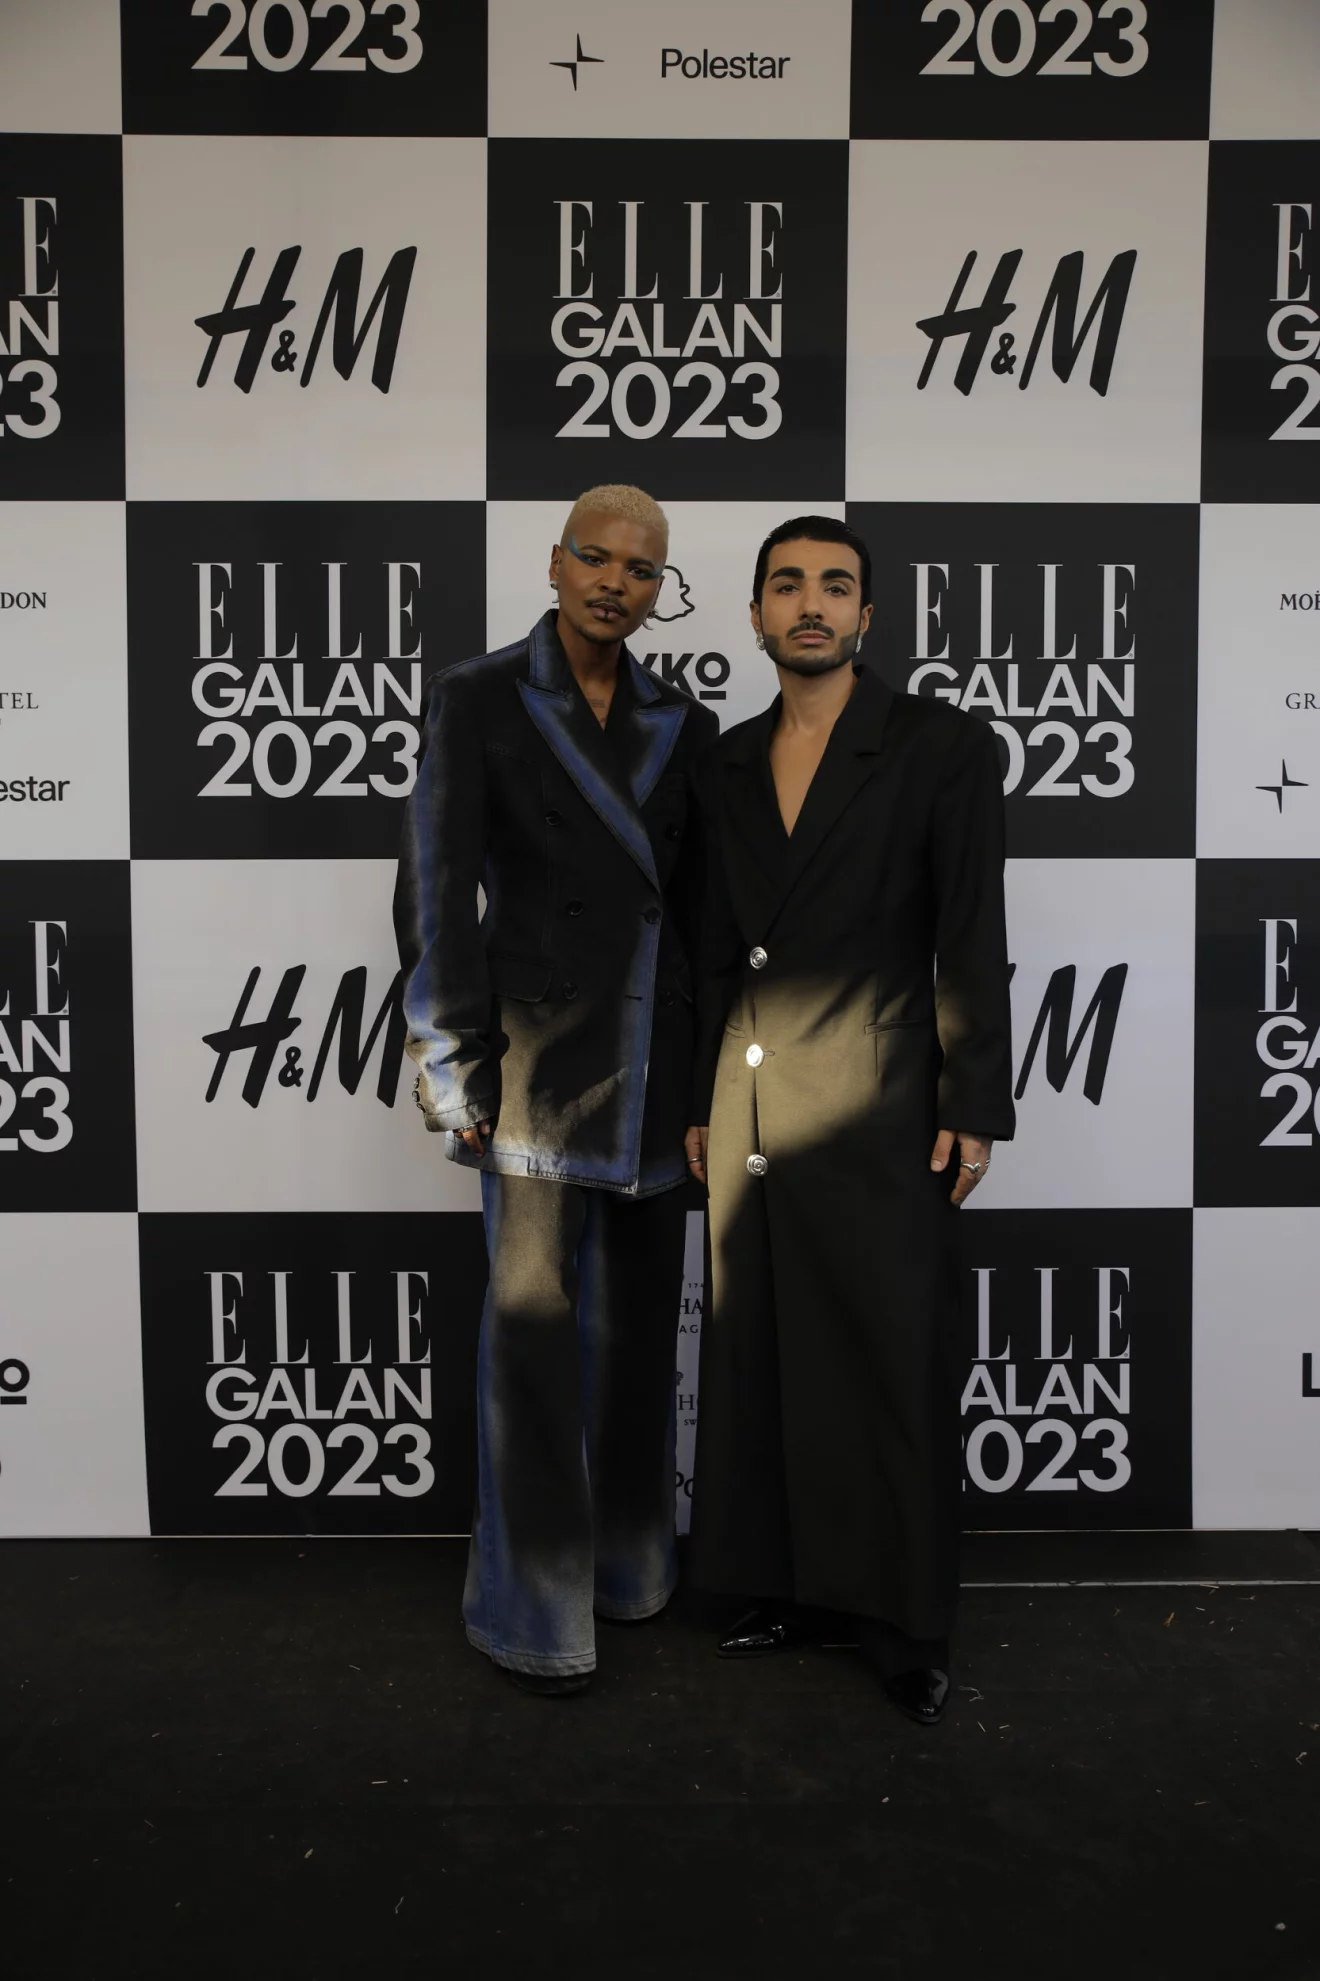 ELLE-galan 2023 röda mattan Julian Hernandez och Rami Hanna